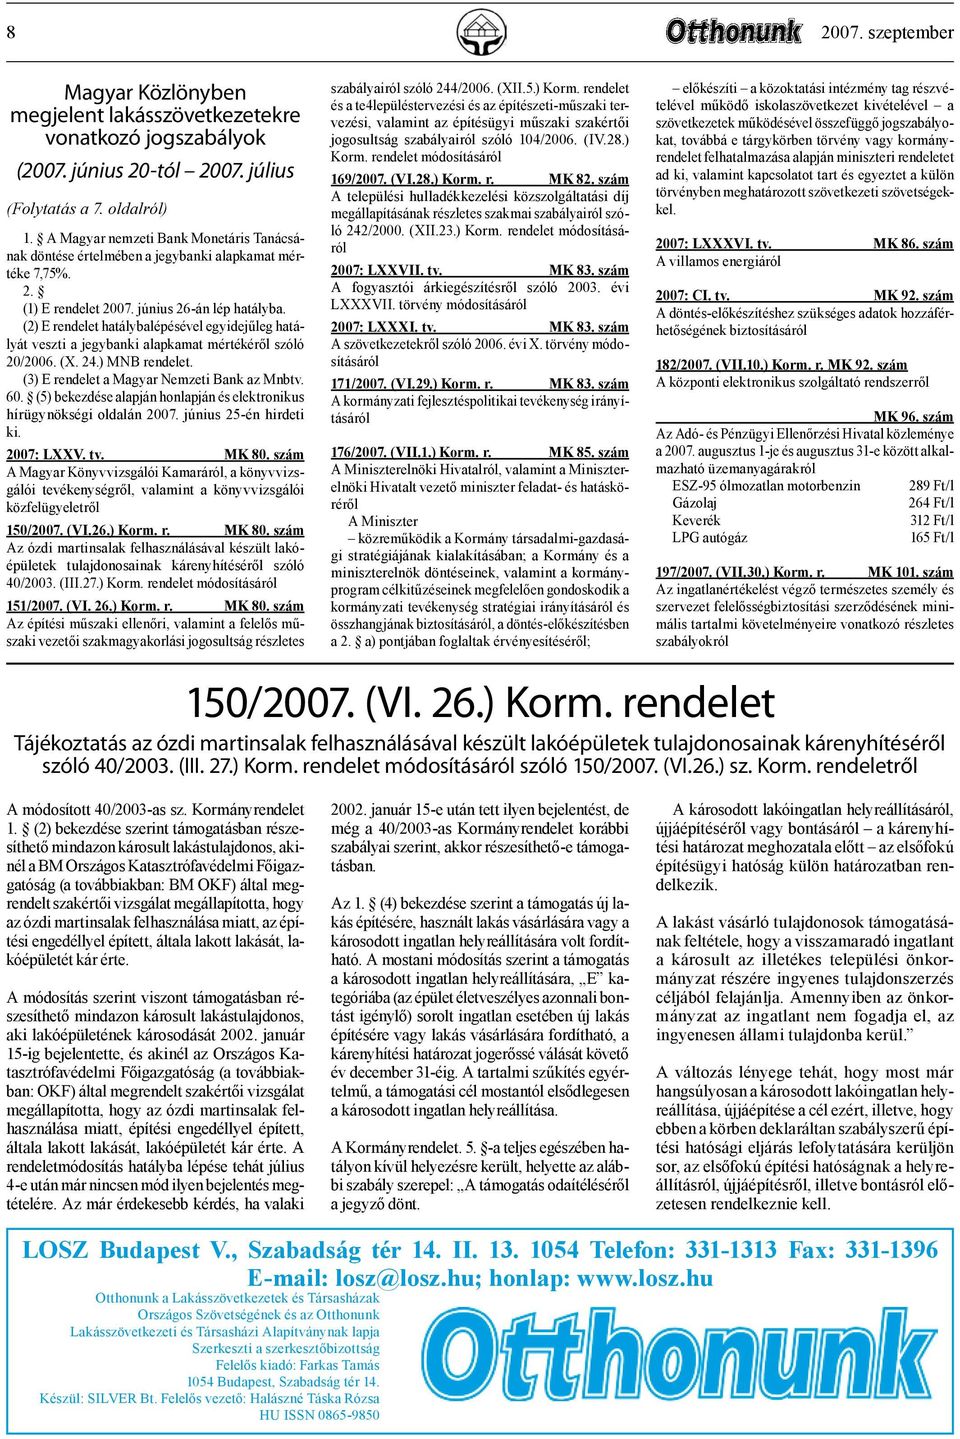 (2) E rendelet hatálybalépésével egyidejűleg hatályát veszti a jegybanki alapkamat mértékéről szóló 20/2006. (X. 24.) MNB rendelet. (3) E rendelet a Magyar Nemzeti Bank az Mnbtv. 60.